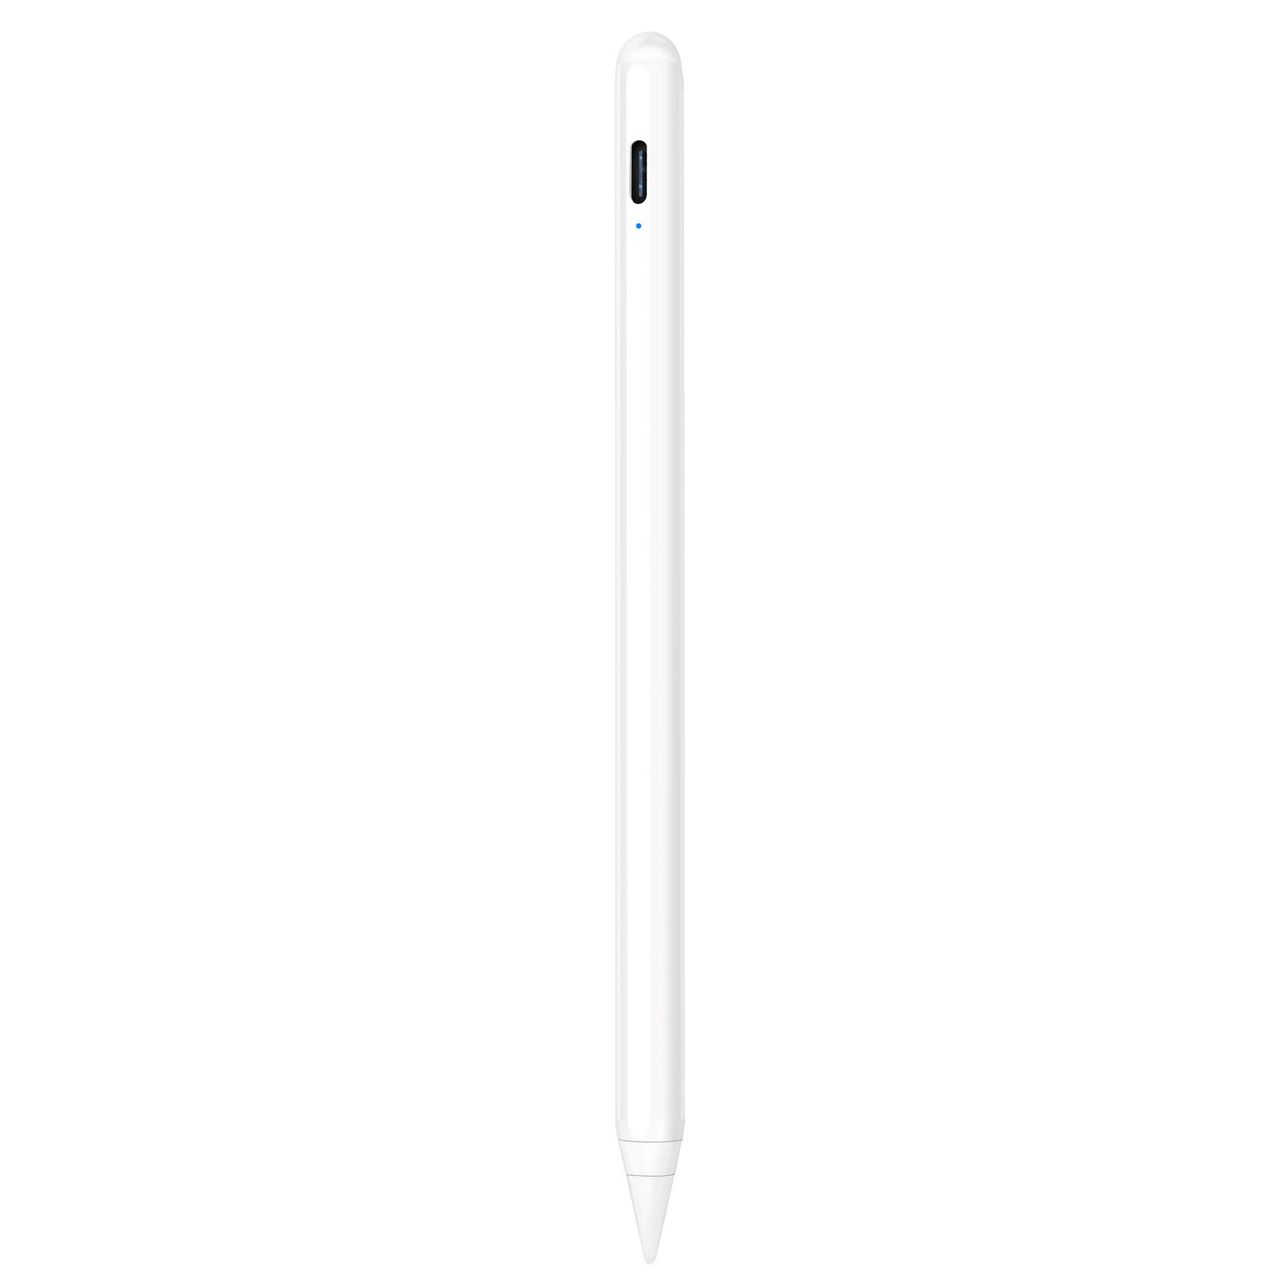 タッチペン iPad用ペン JAMJAKE 急速充電 スタイラスペン 極細 高感度 iPad用pencil 傾き感知/磁気吸着/誤作動防止機能対応 軽量 耐摩 2018年以降iPad/iPad Pro/iPad air/iPad mini対応